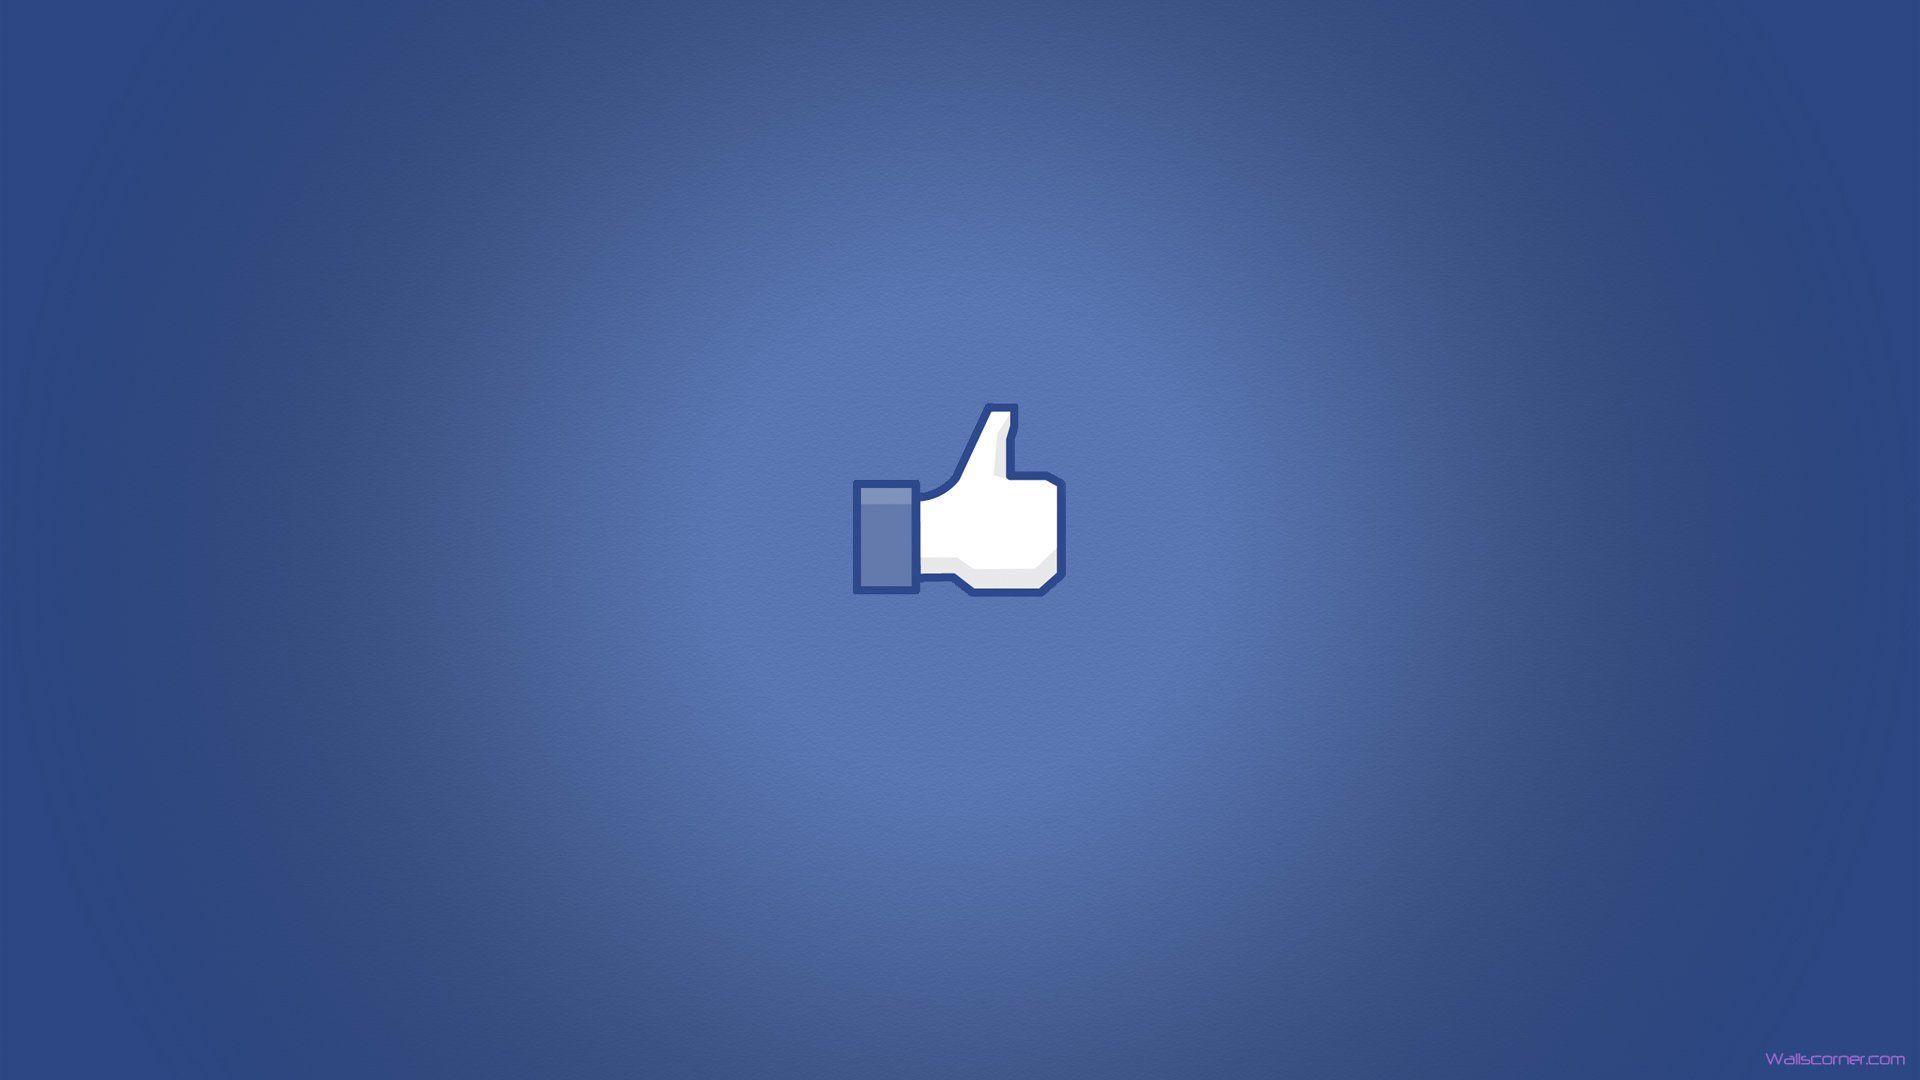 Facebook Background. Facebook Wallpaper, Attractive Wallpaper Facebook Profile for Girls and Facebook Background